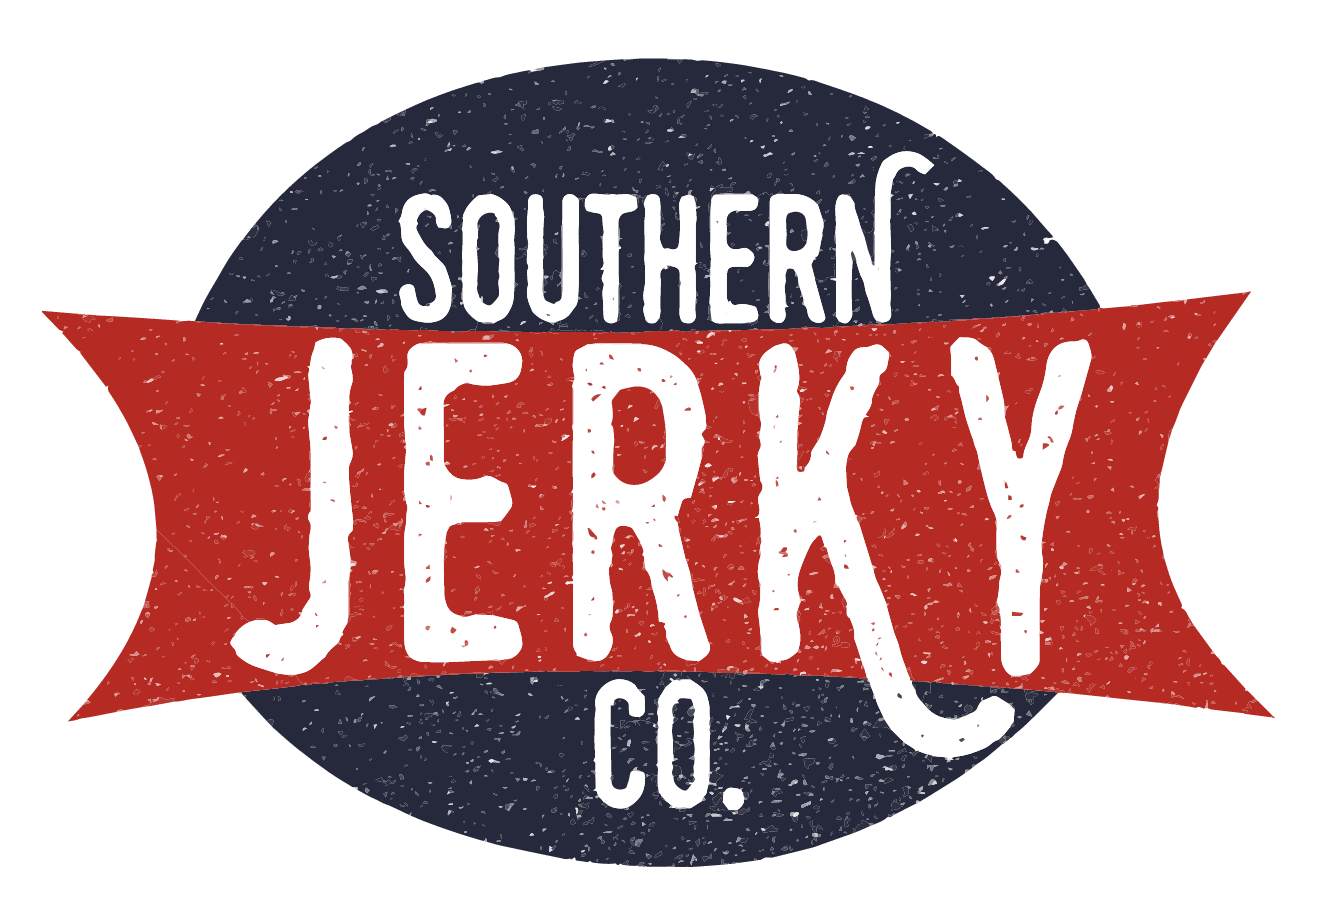 Southern Jerky Co.